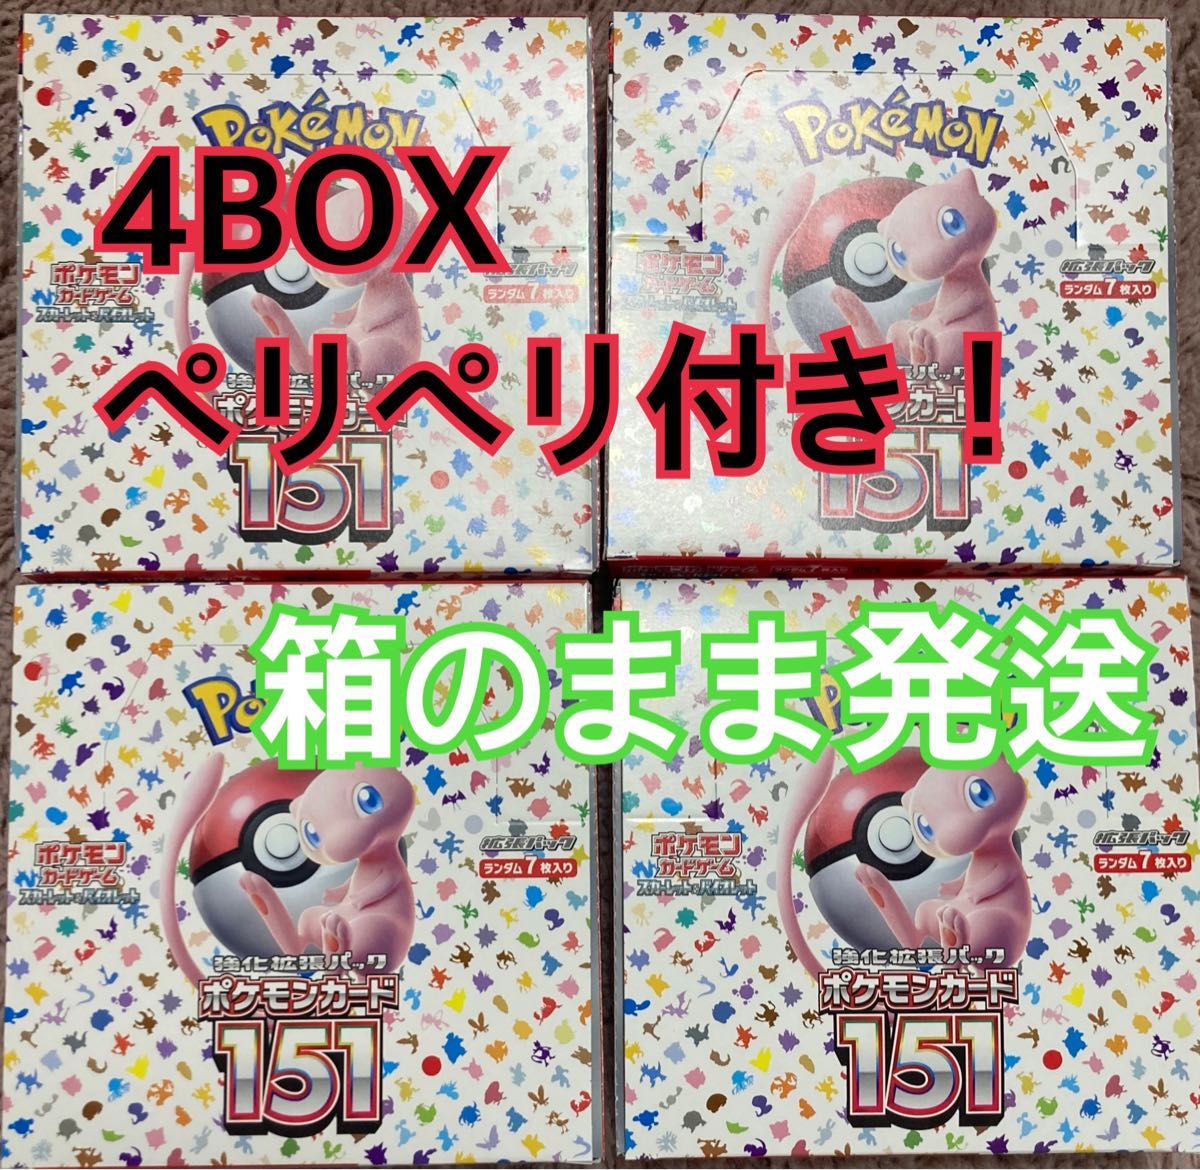 ポケモンカード 151 4 ボックス シュリンク なし ペリペリ付き｜PayPay 